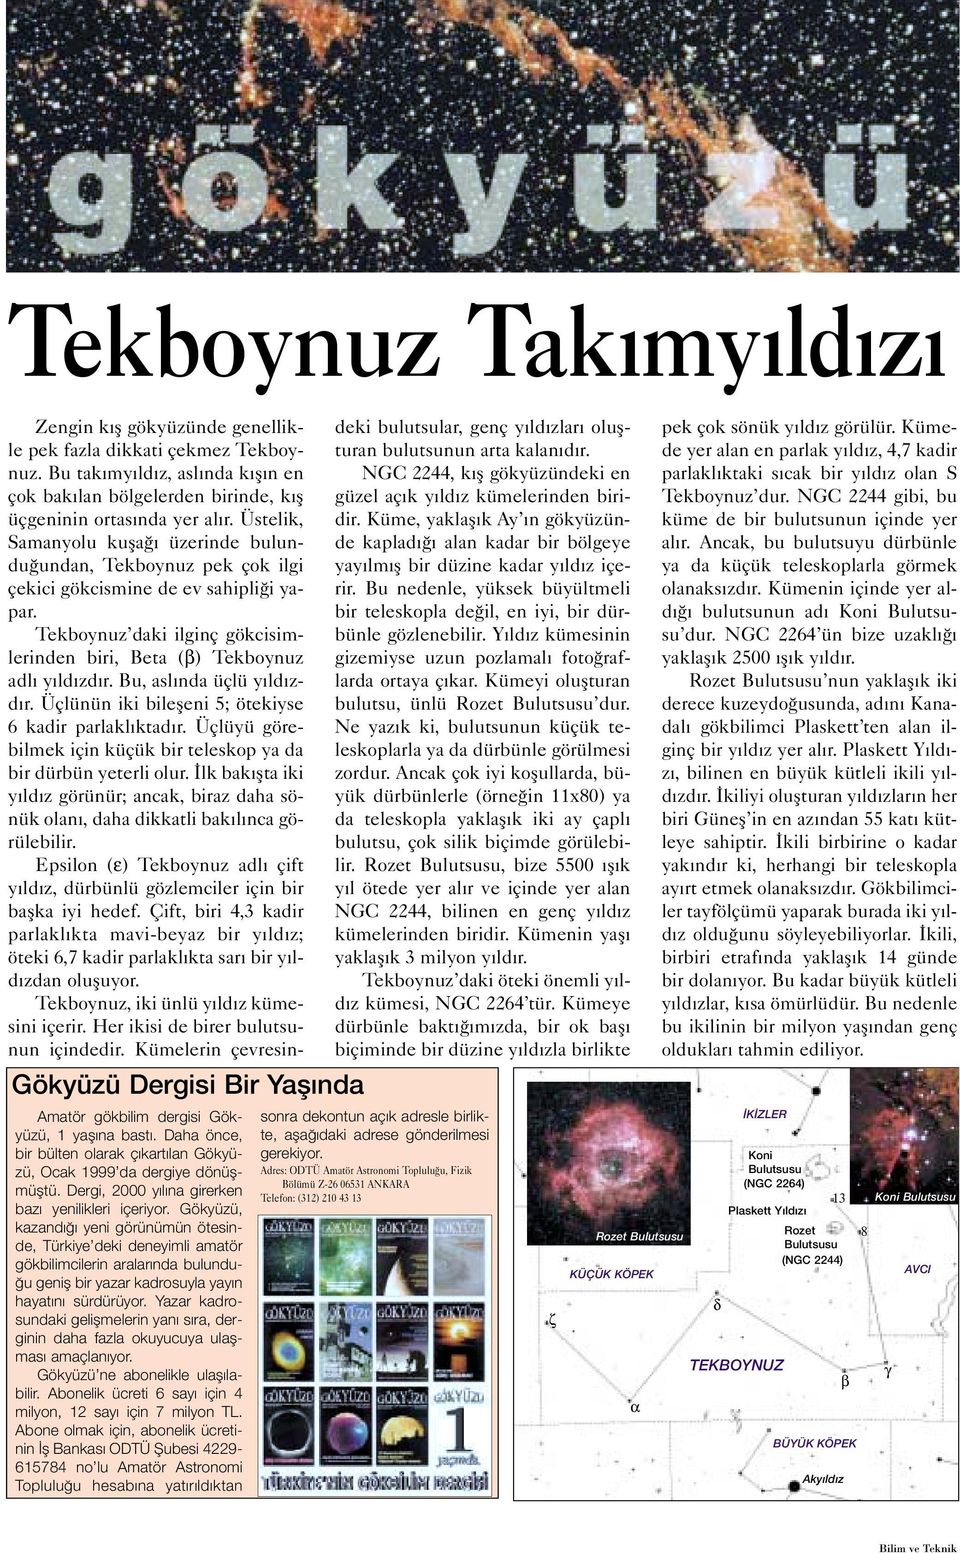 Gökyüzü, kazandığı yeni görünümün ötesinde, Türkiye deki deneyimli amatör gökbilimcilerin aralarında bulunduğu geniş bir yazar kadrosuyla yayın hayatını sürdürüyor.